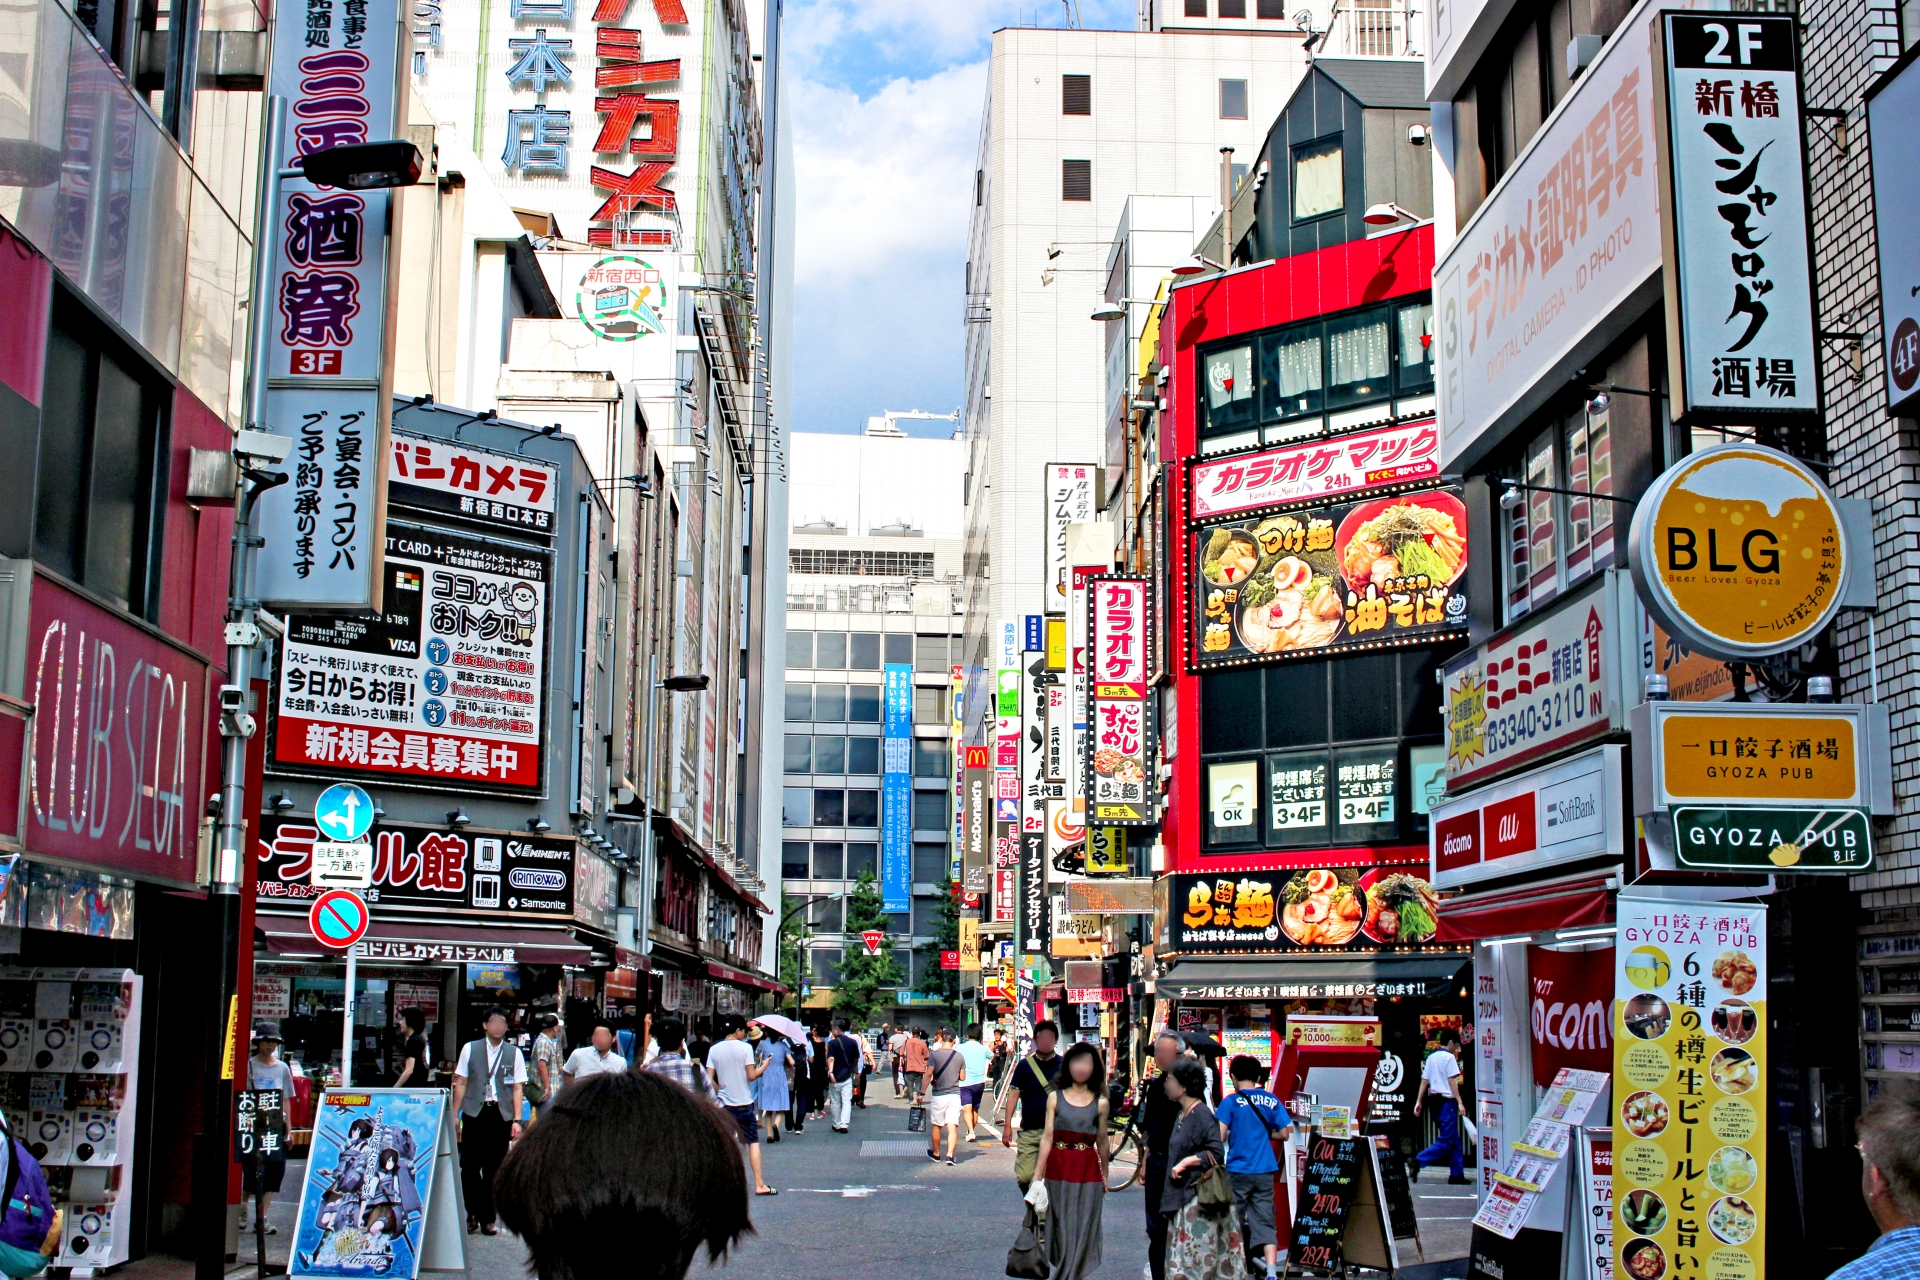 中国人観光客が日本に押し寄せる理由について調べた